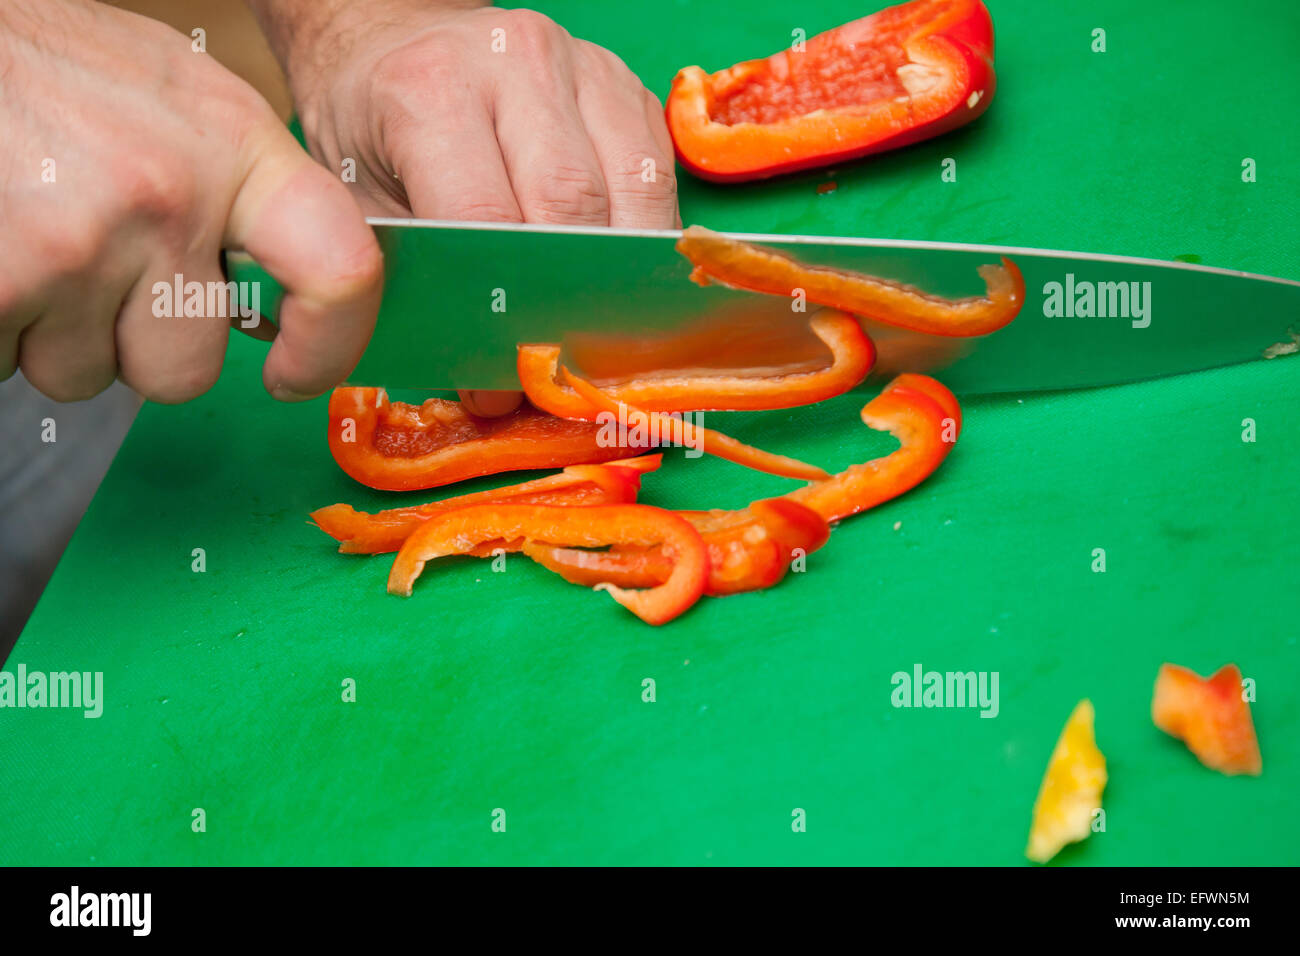 Zubereitung von Speisen - eine rote Paprika schneiden Stockfoto